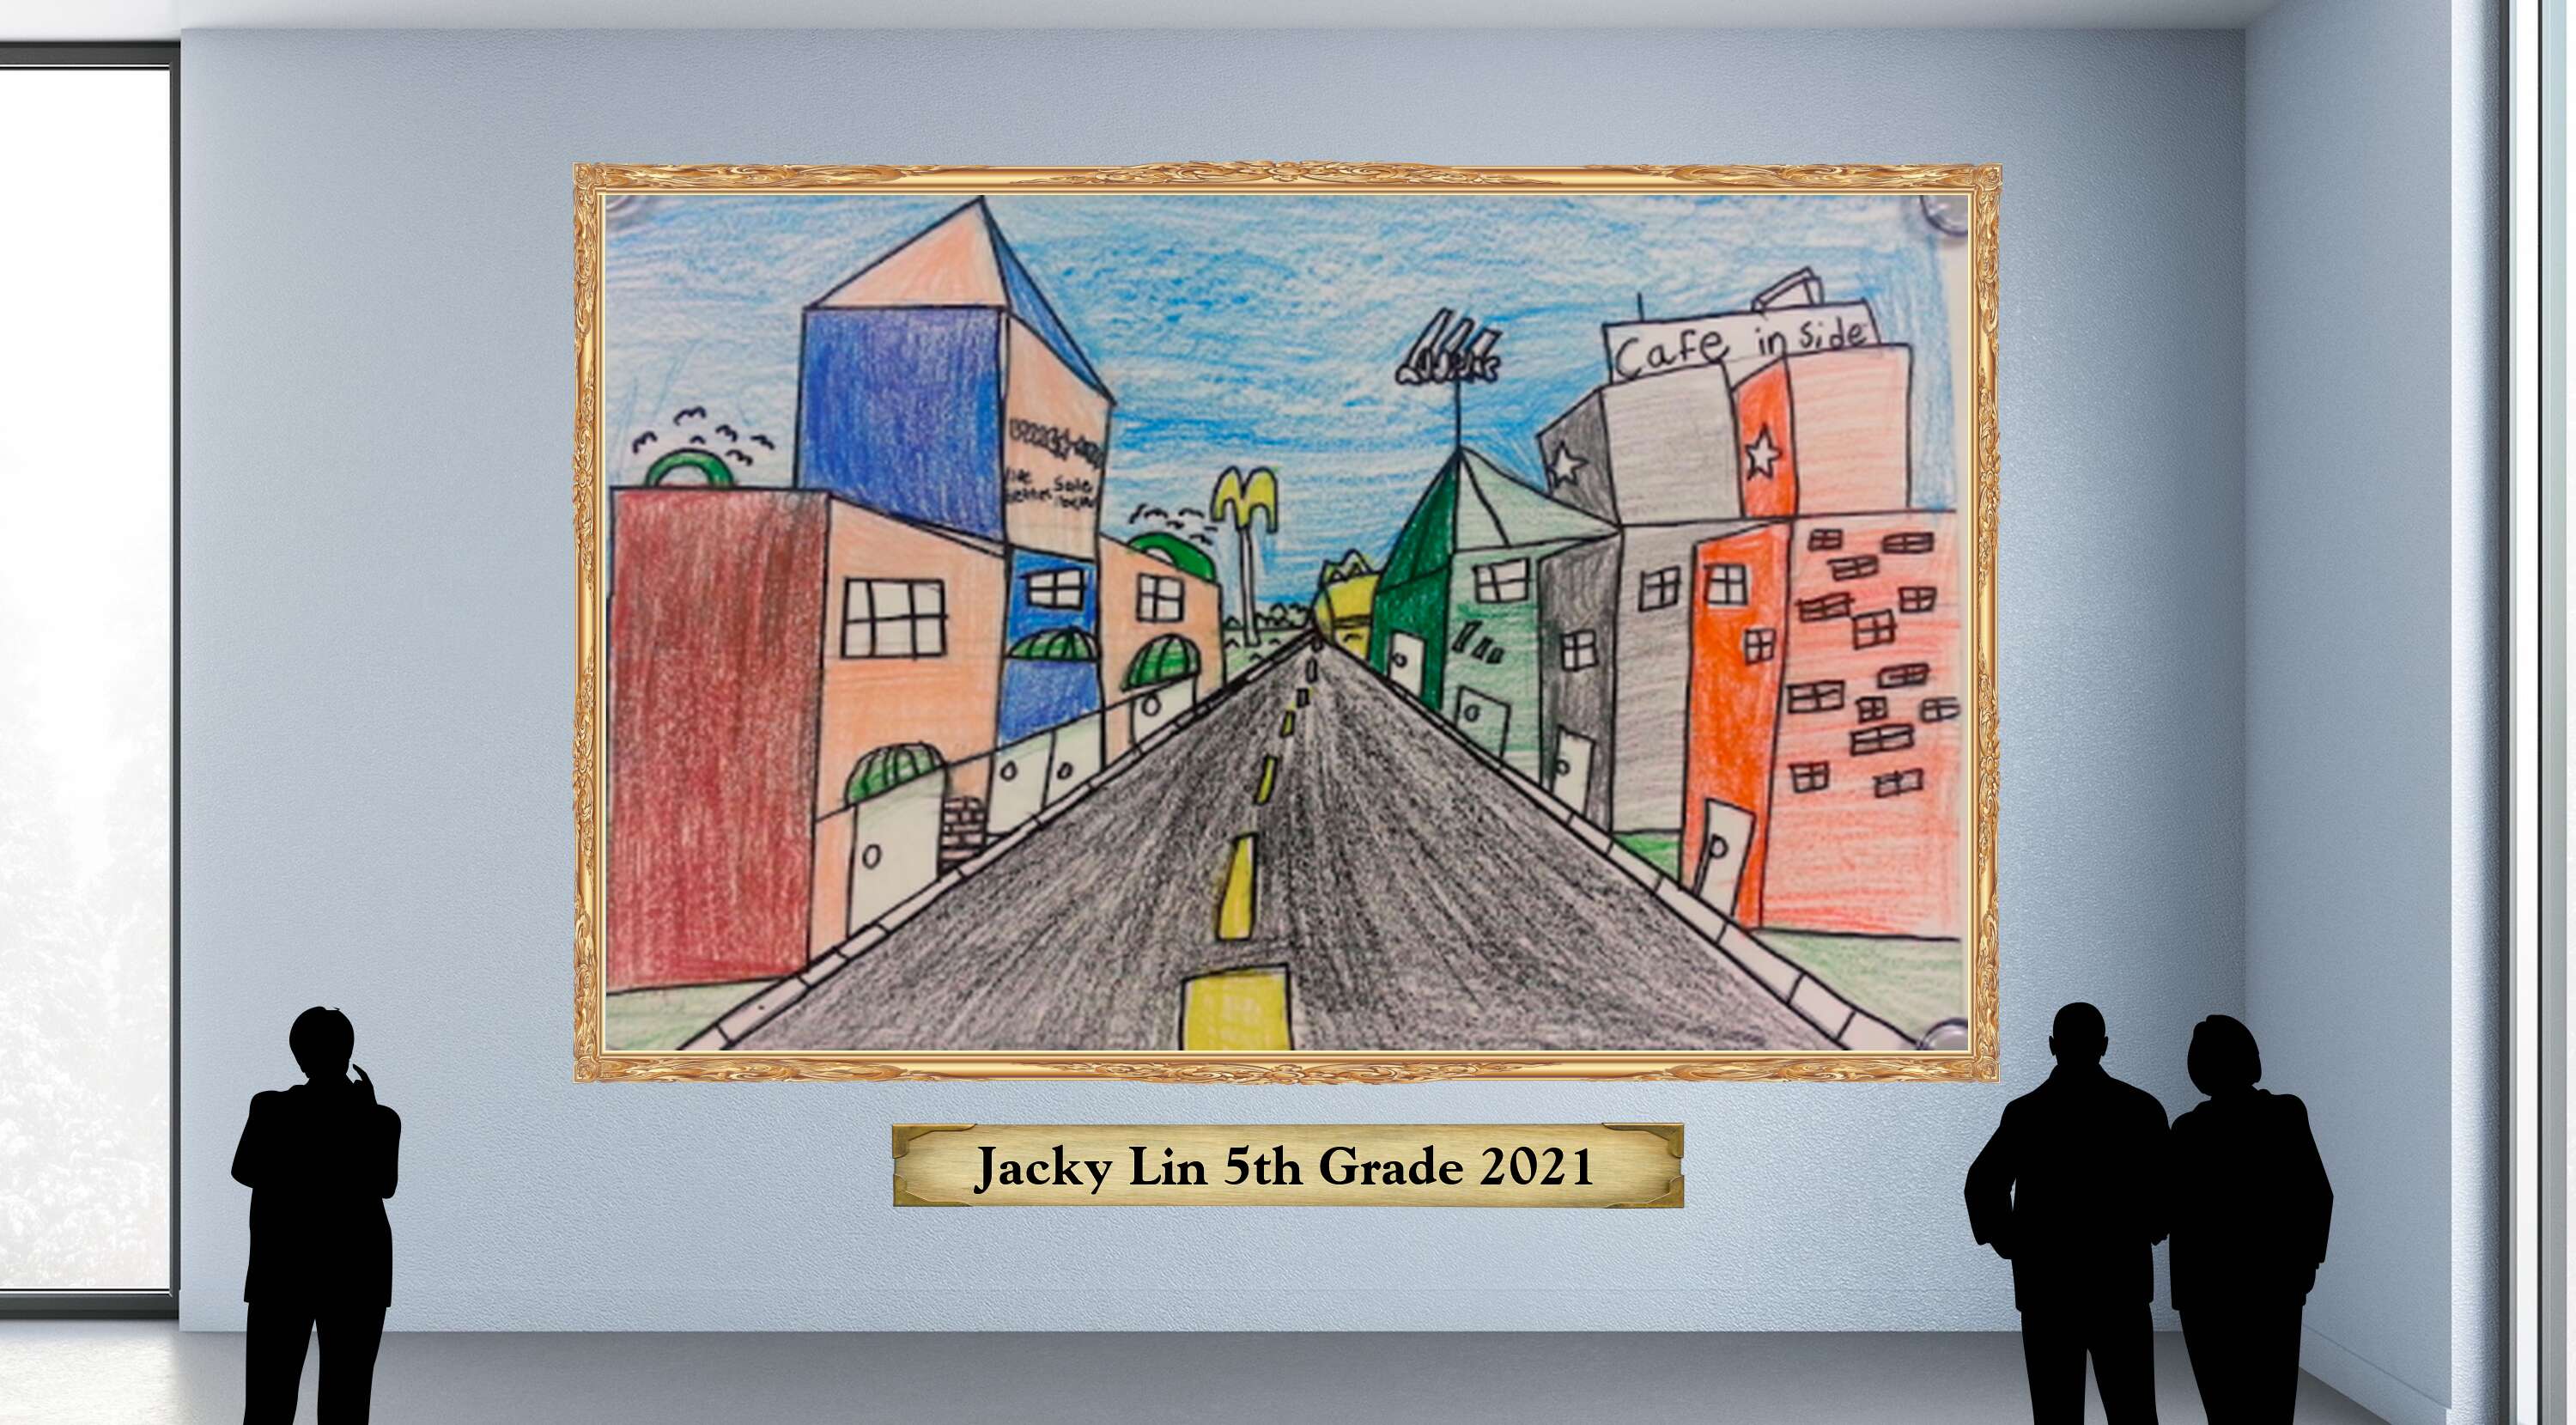 Jacky Lin 5th Grade 2021